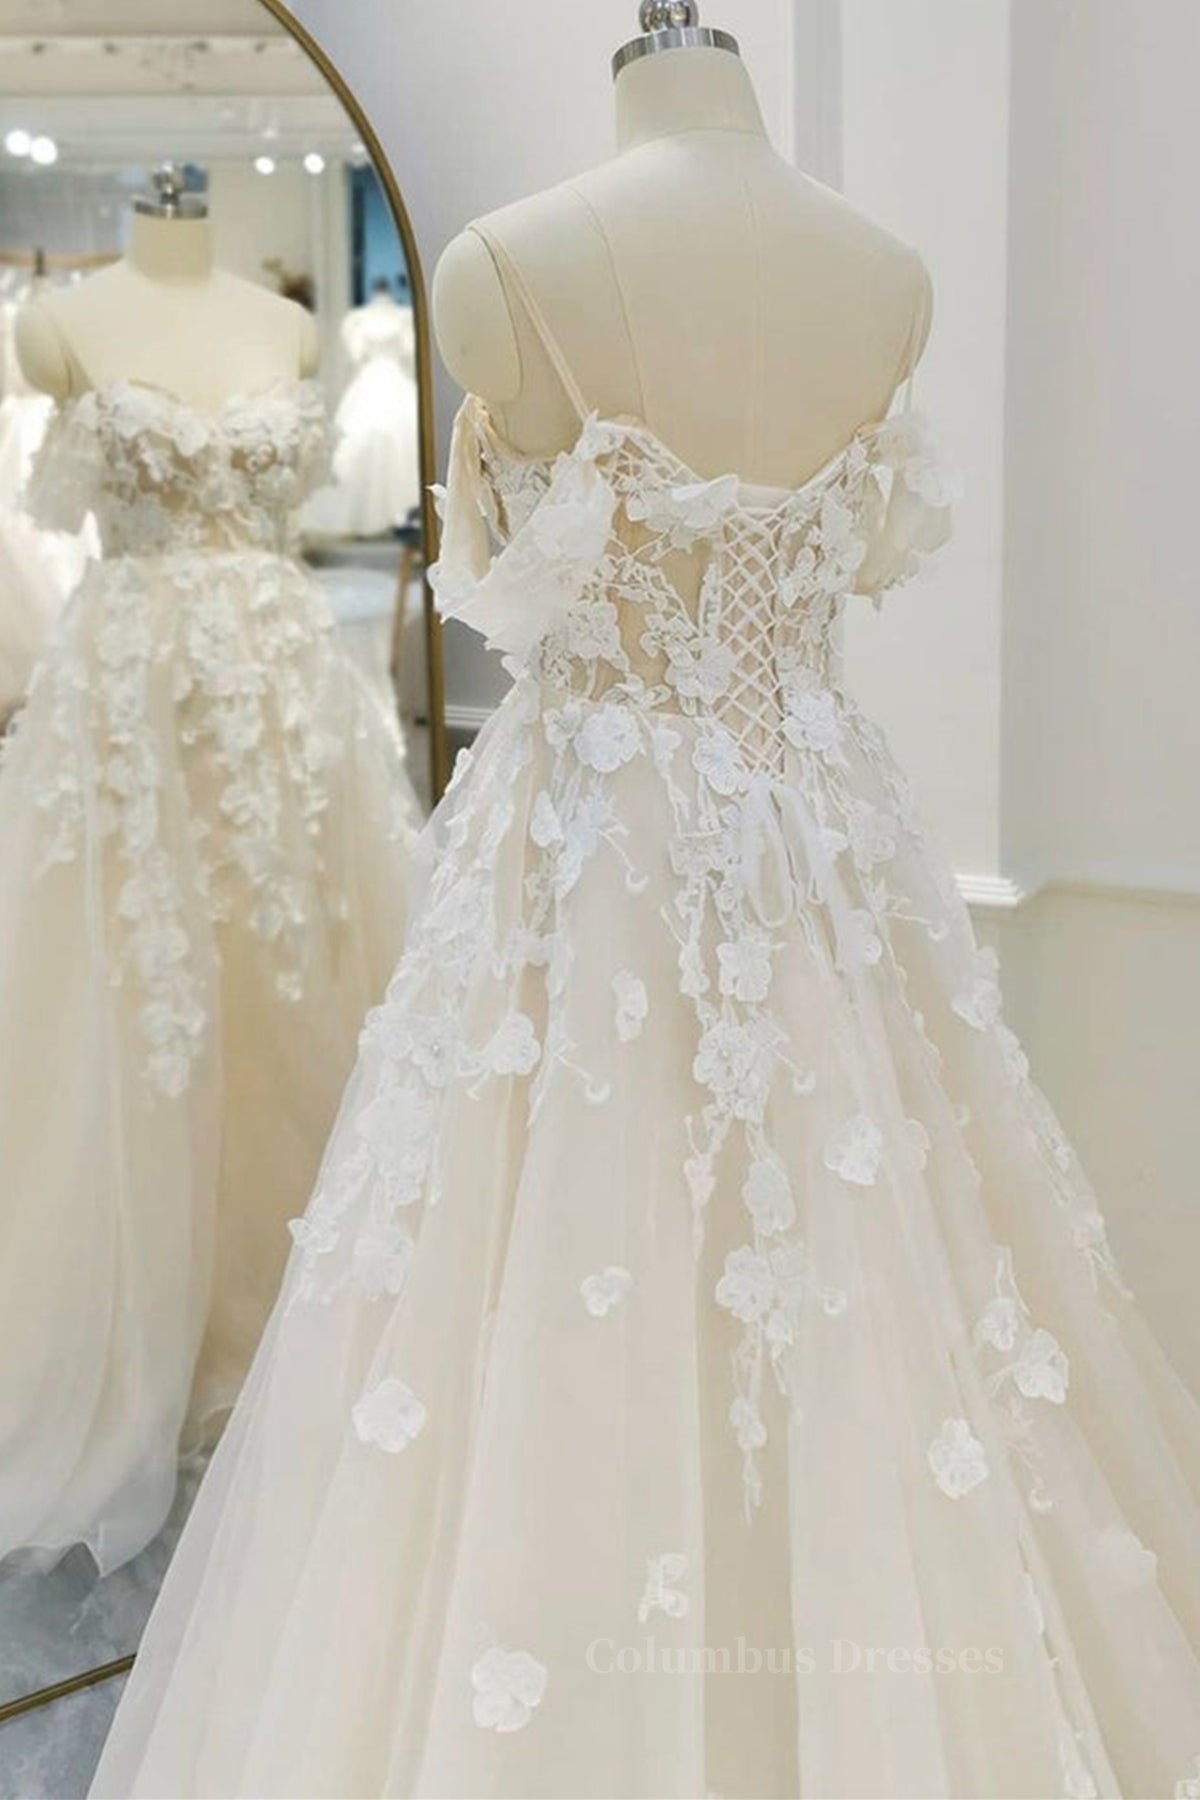 Bridesmaid Dresses 2056, Off Shoulder Light Champagne Tulle Lace Long Prom Dress, Light Champagne Lace Formal Evening Dress